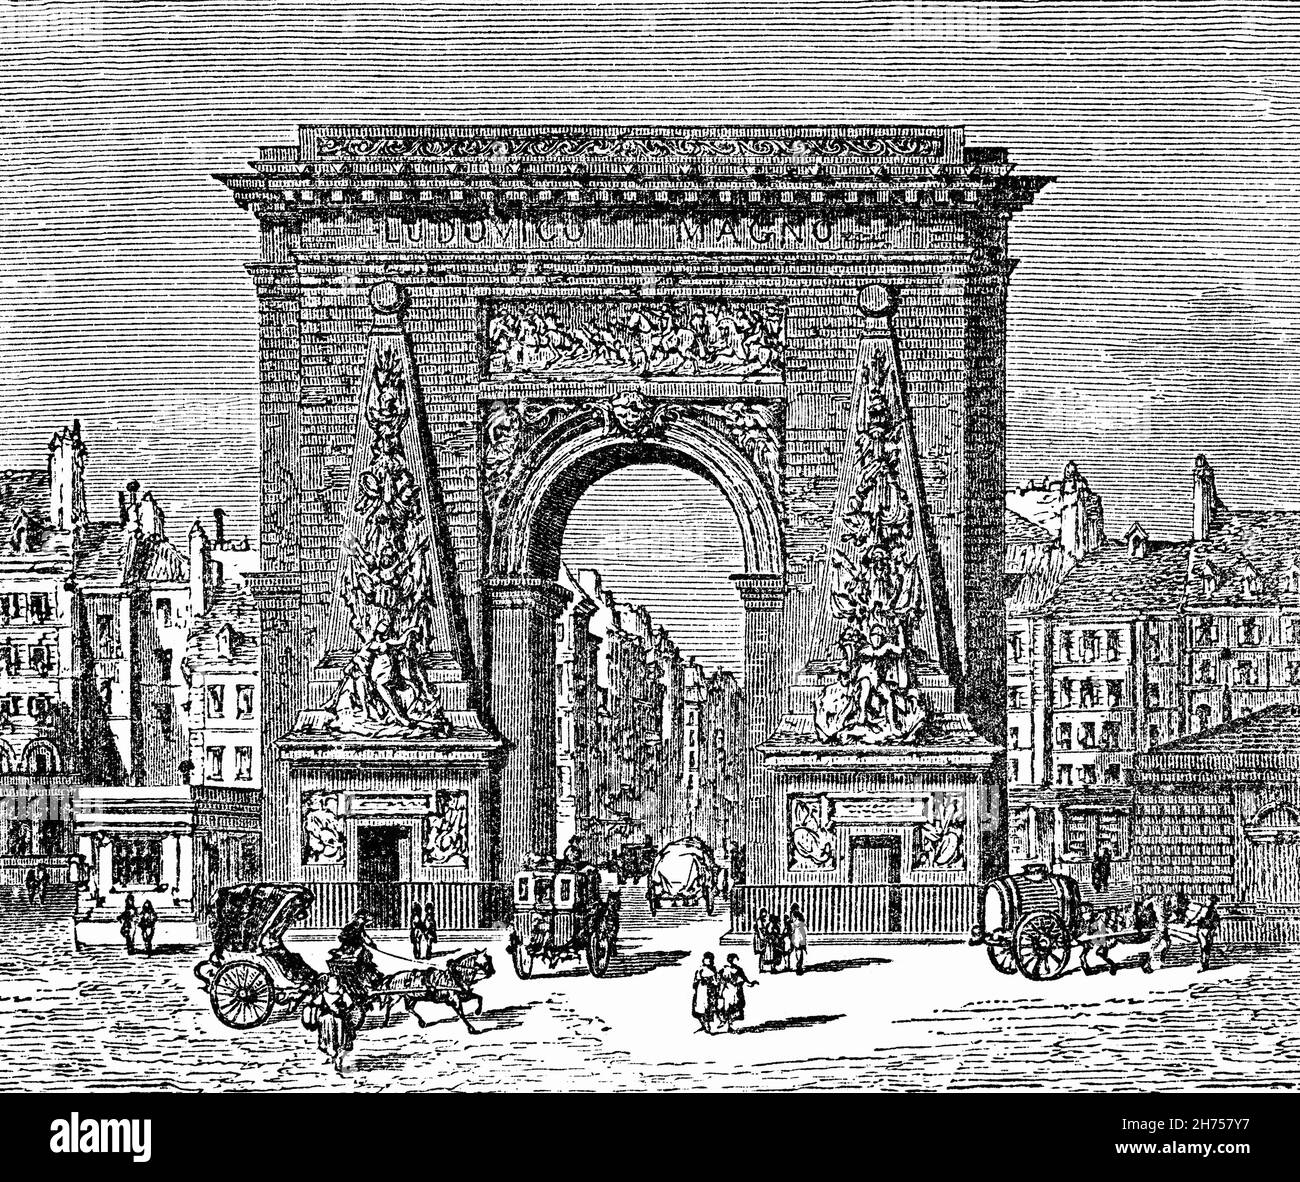 Eine Illustration der Porte Saint-Denis aus dem späten 19th. Jahrhundert, einem Pariser Denkmal im 10th. Arrondissement. Es war ursprünglich ein Tor durch die Mauer von Karl V., das zwischen 1356 und 1383 zum Schutz des rechten Pariser Ufers erbaut wurde. Stockfoto